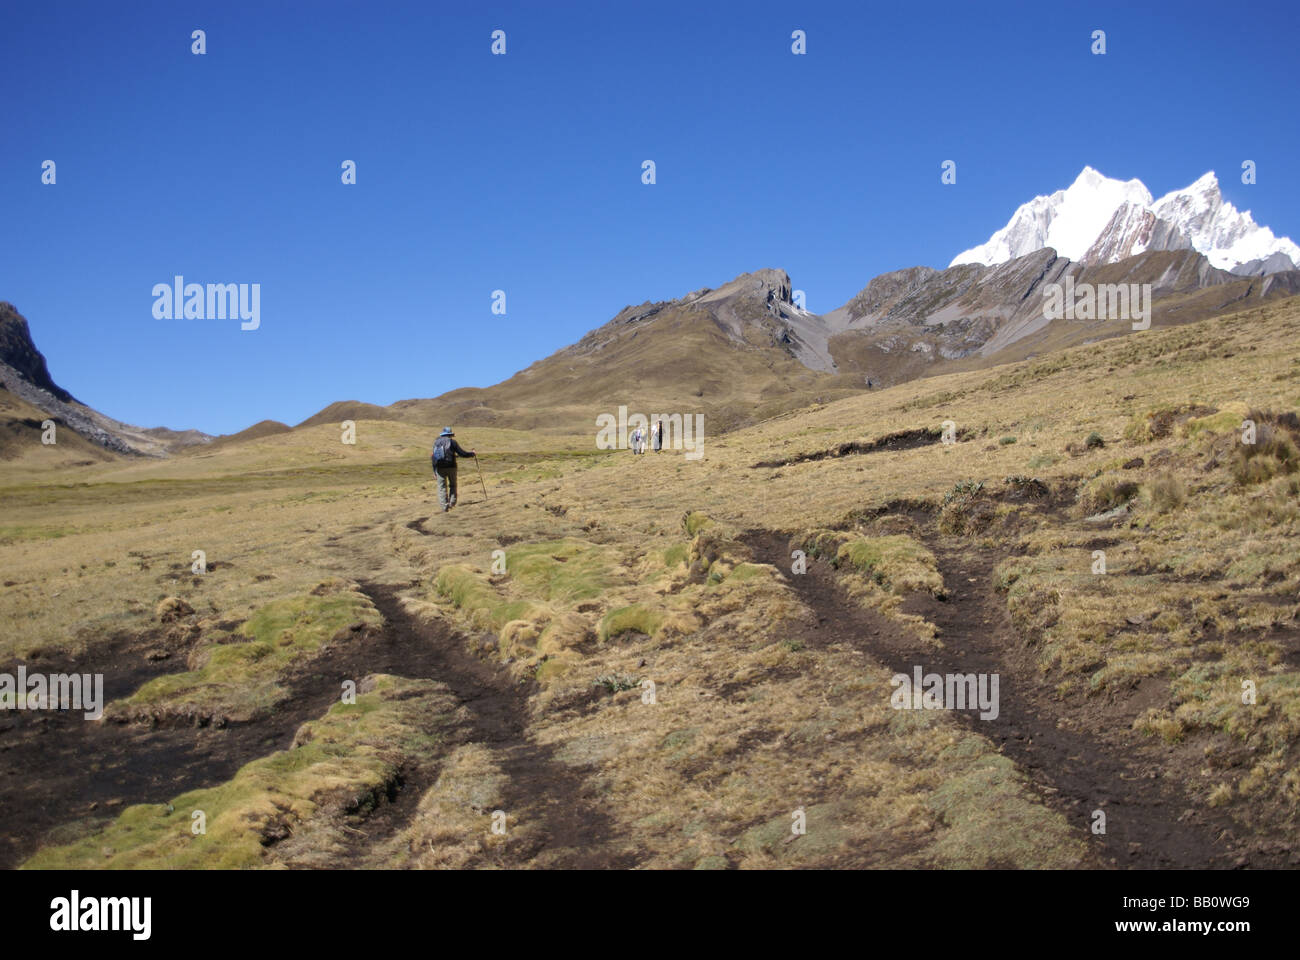 Wanderer auf dem Weg in den hohen Anden Yerupaja im Hintergrund Cordillera Huayhuash Anden Peru Südamerika Stockfoto